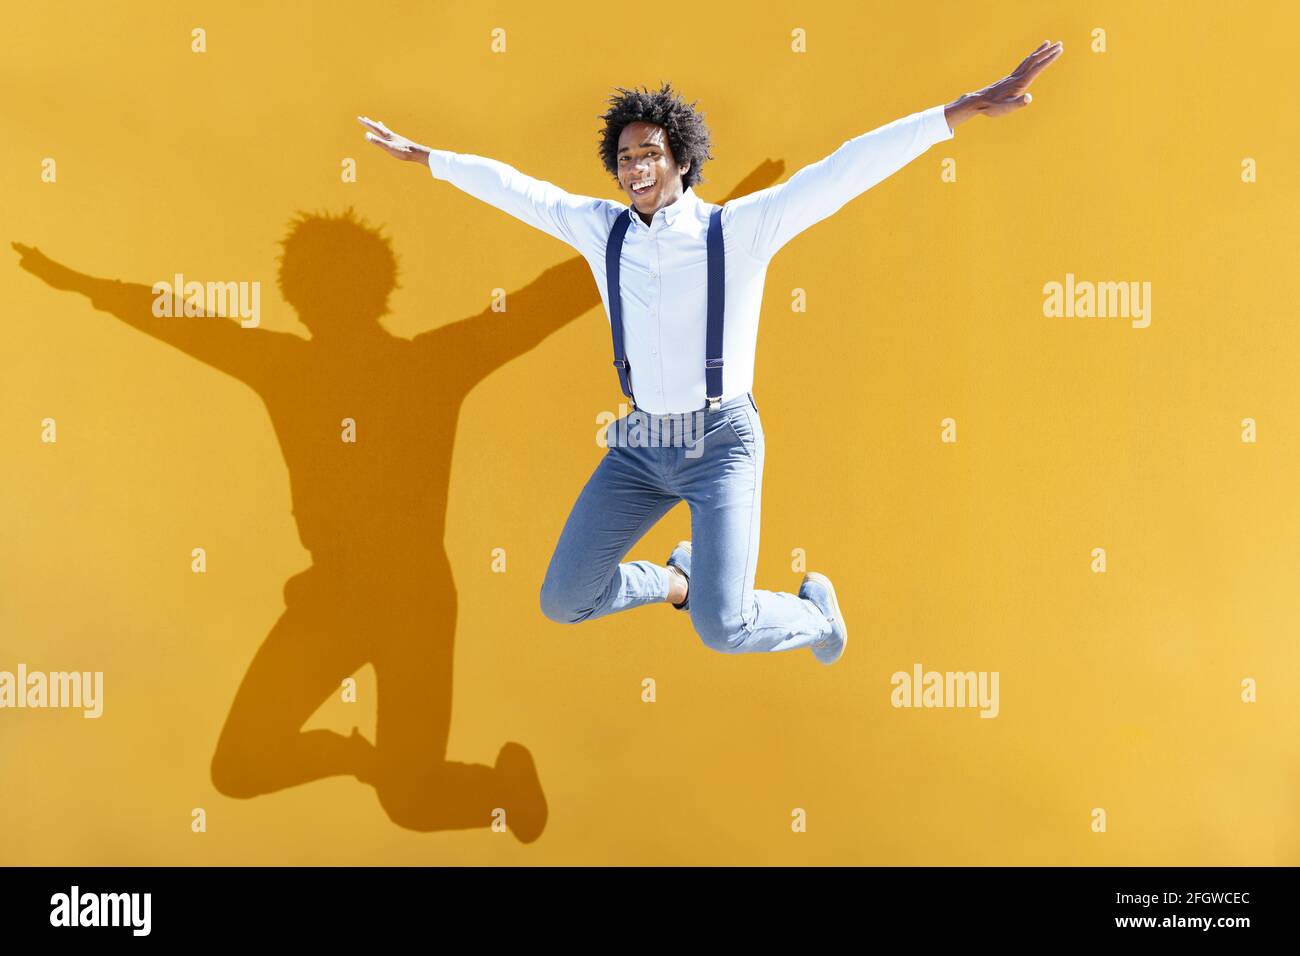 Uomo nero con capelli afro che saltano su uno sfondo urbano giallo. Ragazzo che indossa camicia e sospenditori. Foto Stock